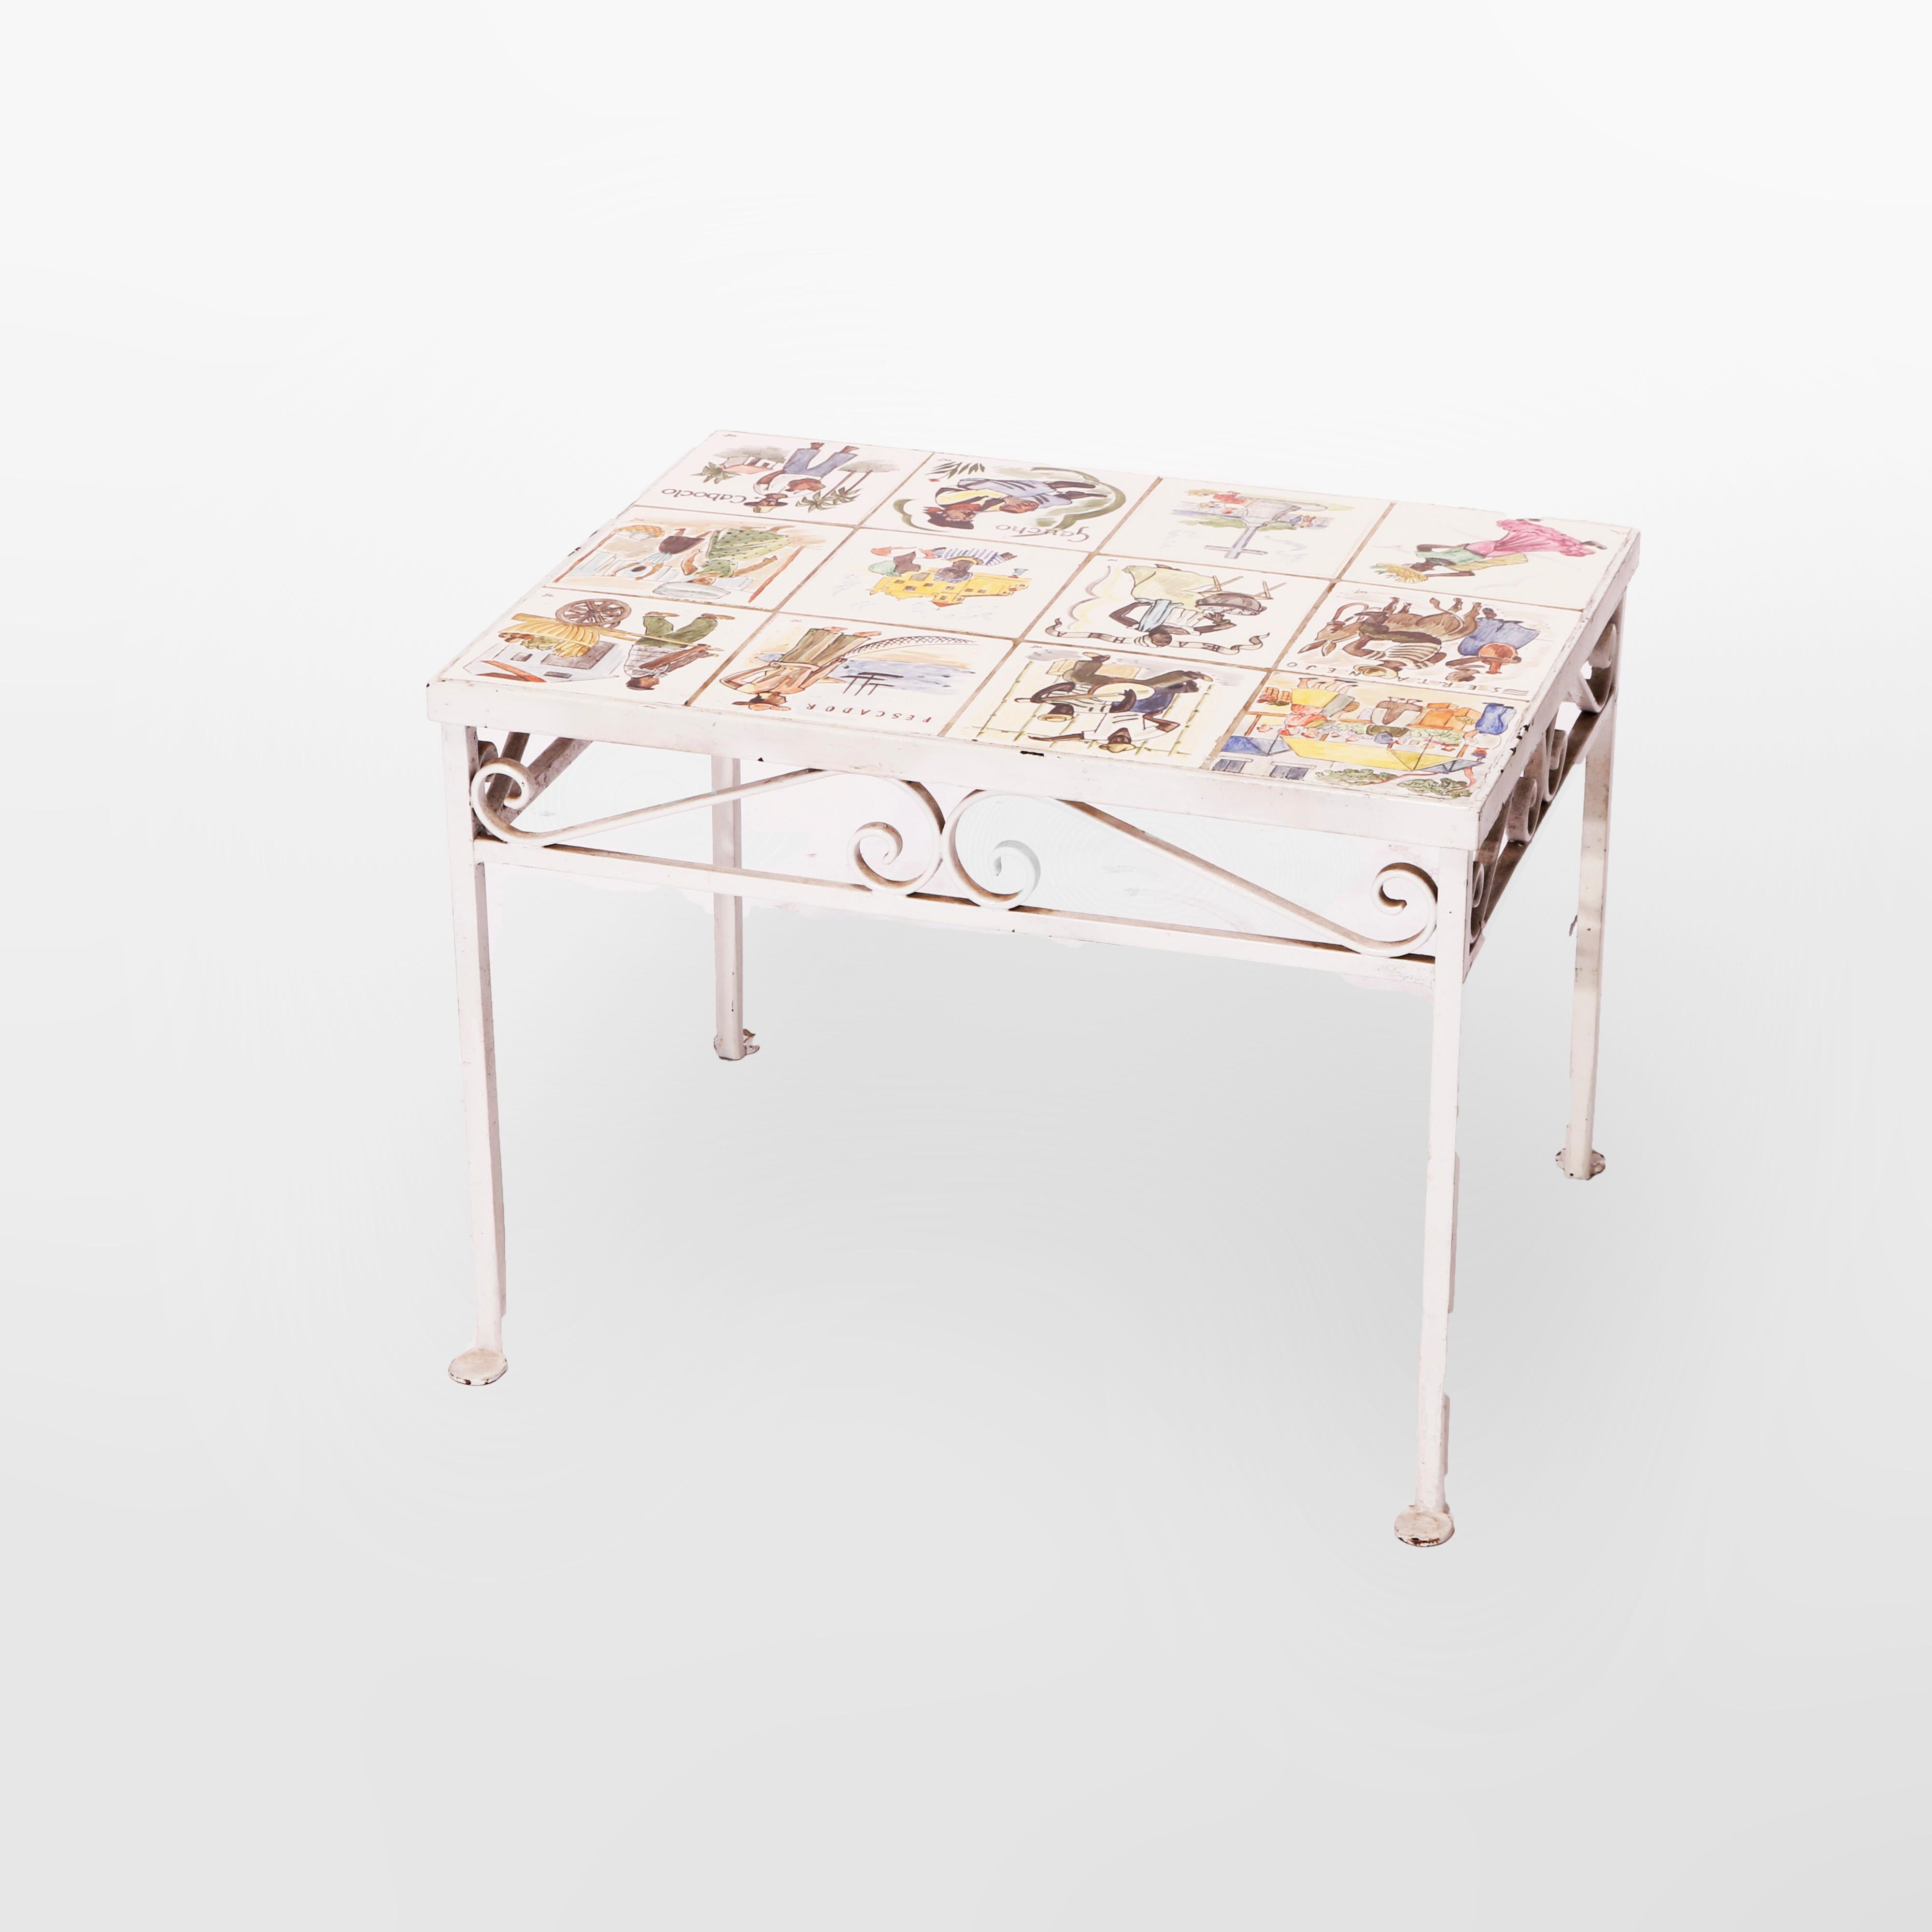 Ein antiker Tisch aus Kunsthandwerk bietet einen bemalten schmiedeeisernen Rahmen mit einer Schürze in Form einer Schnecke, die eine Platte mit einer Sammlung von zwölf handgemalten Fliesen mit Genreszenen umgibt, um 1930

Maße - 18'' H x 24,5'' W x